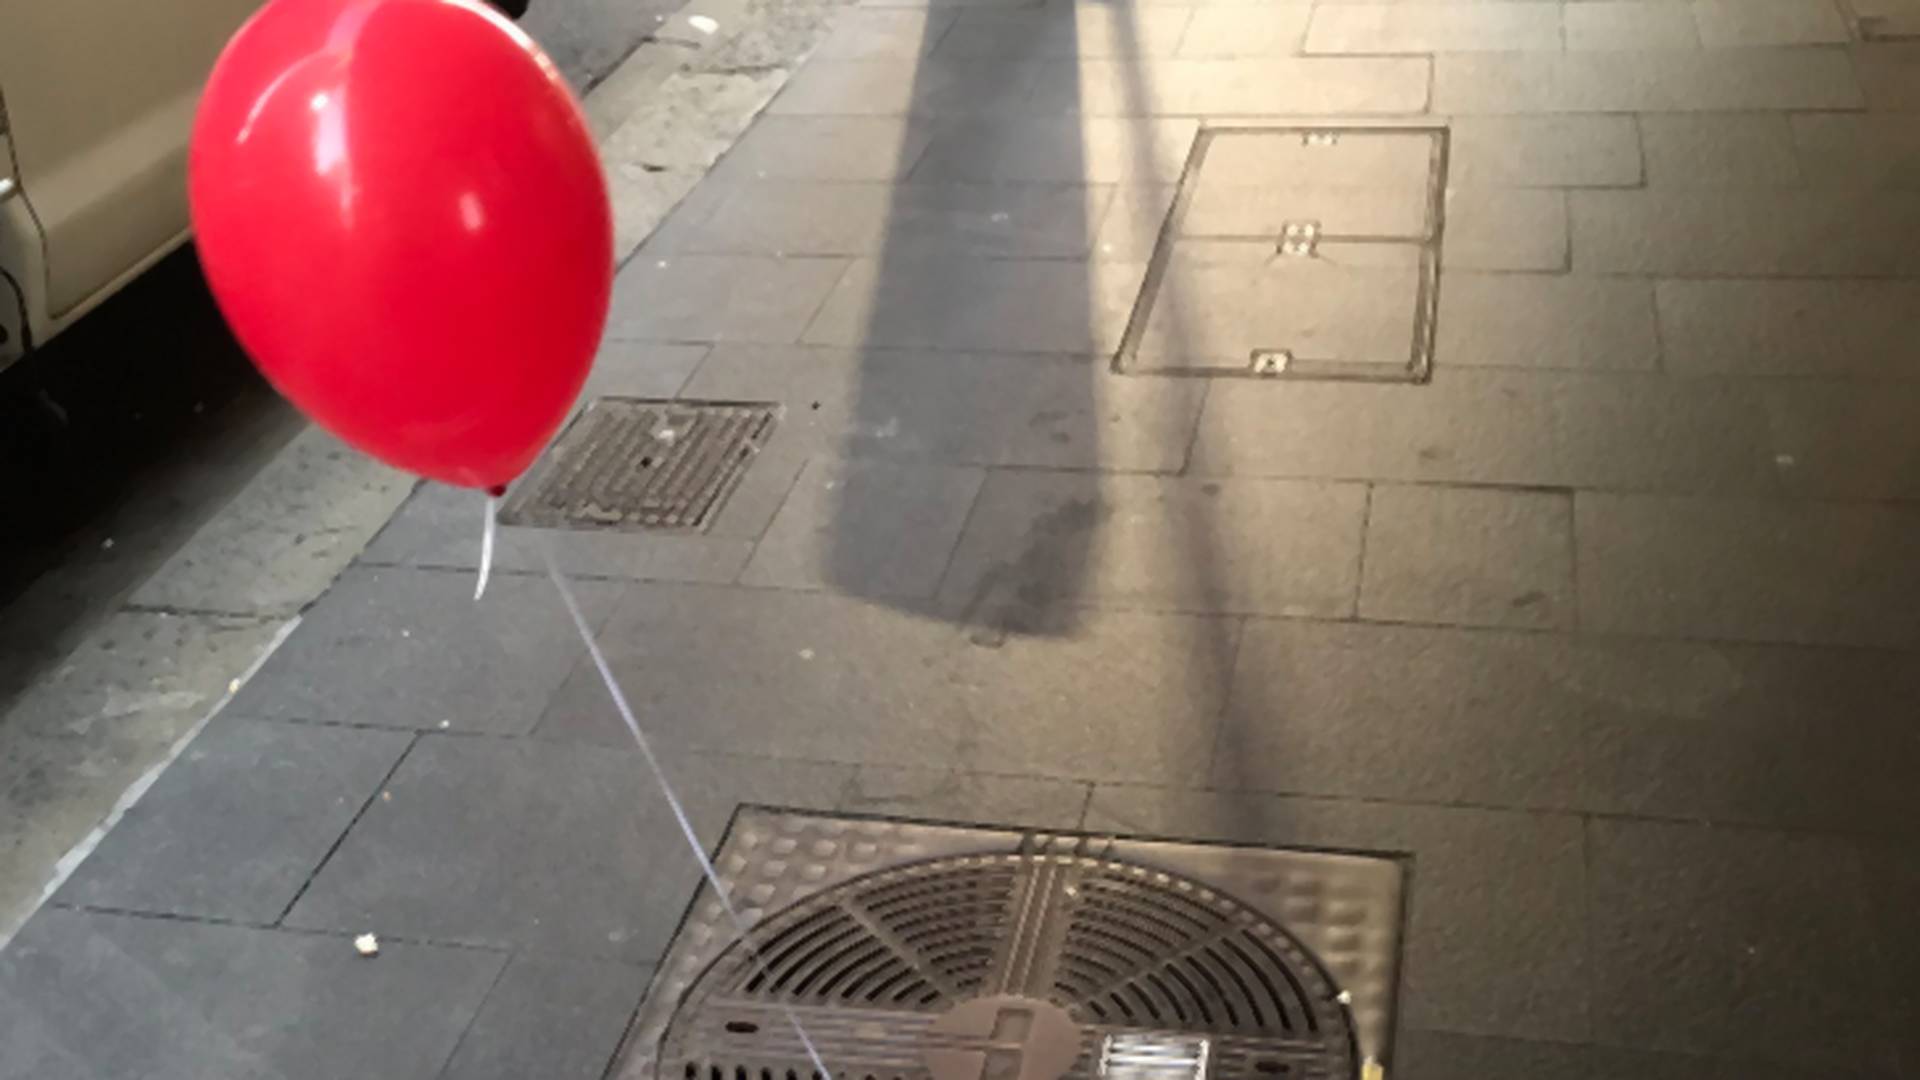 Ľudí vystrašili červené balóny s tajomným odkazom uviazané o kanály